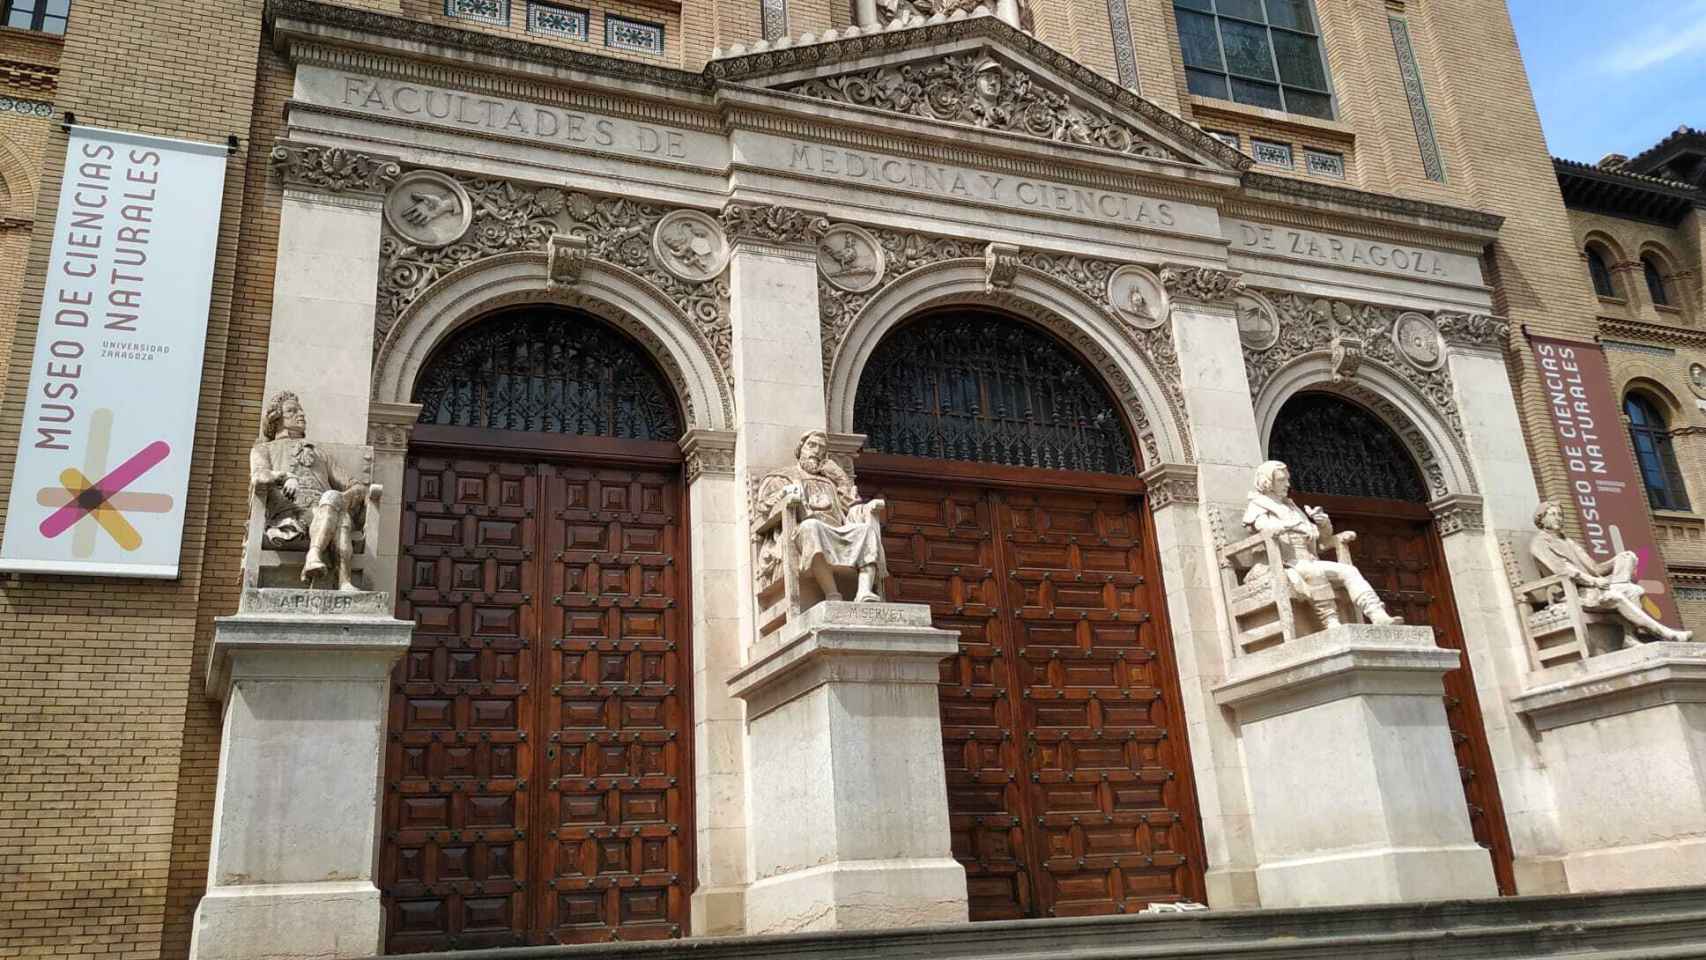 La antigua facultad de Medicina de la Universidad de Zaragoza, a escasos minutos del domicilio familiar. En la actualidad funciona como Paraninfo.